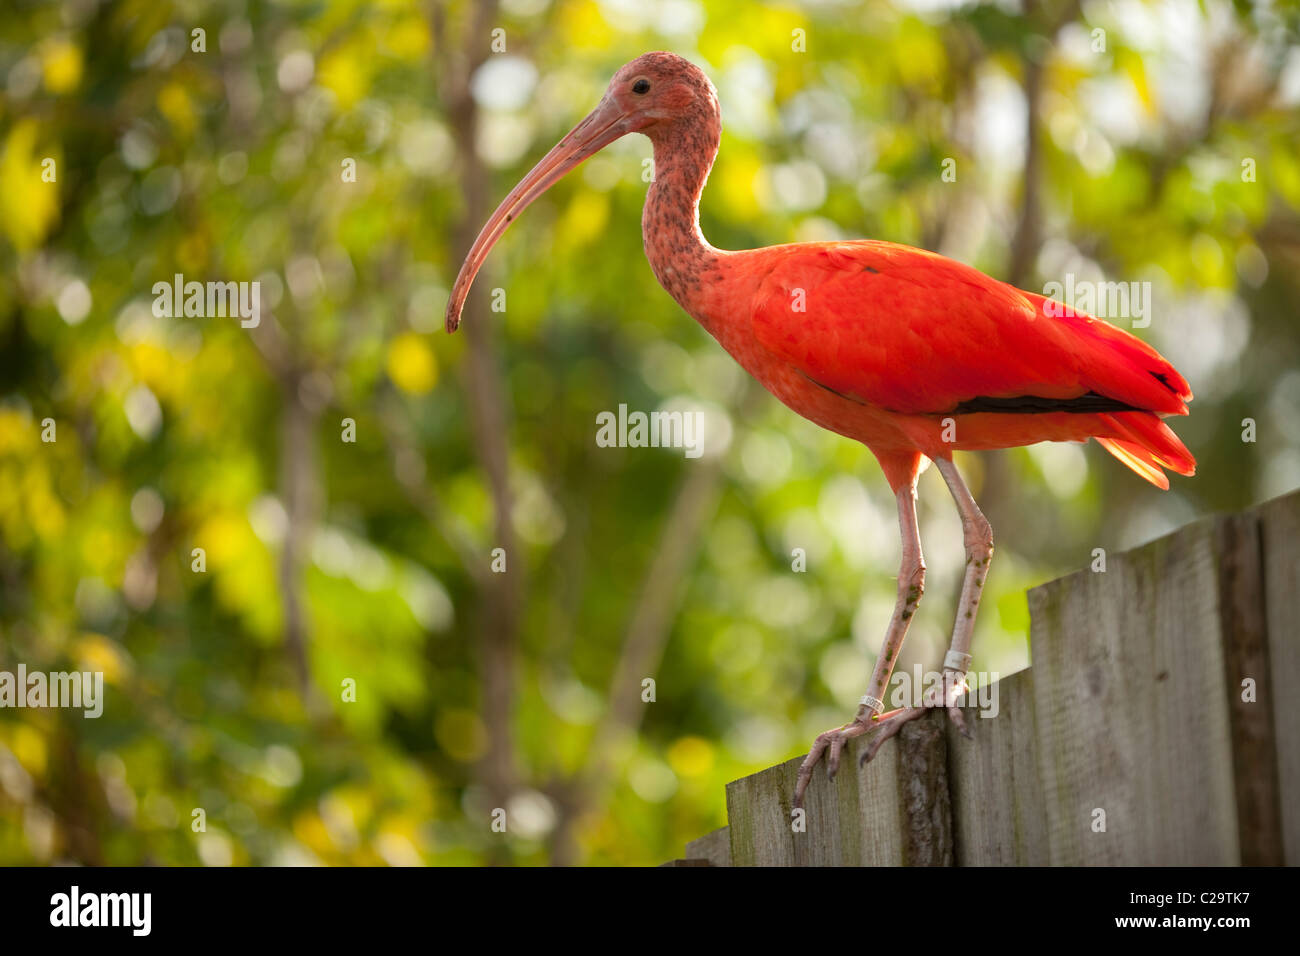 Ibis rouge (Eudocimus ruber). Originaire d'Amérique du Sud tropicale, Trinité-et-Tobago. Oiseau national de Trinidad. Banque D'Images